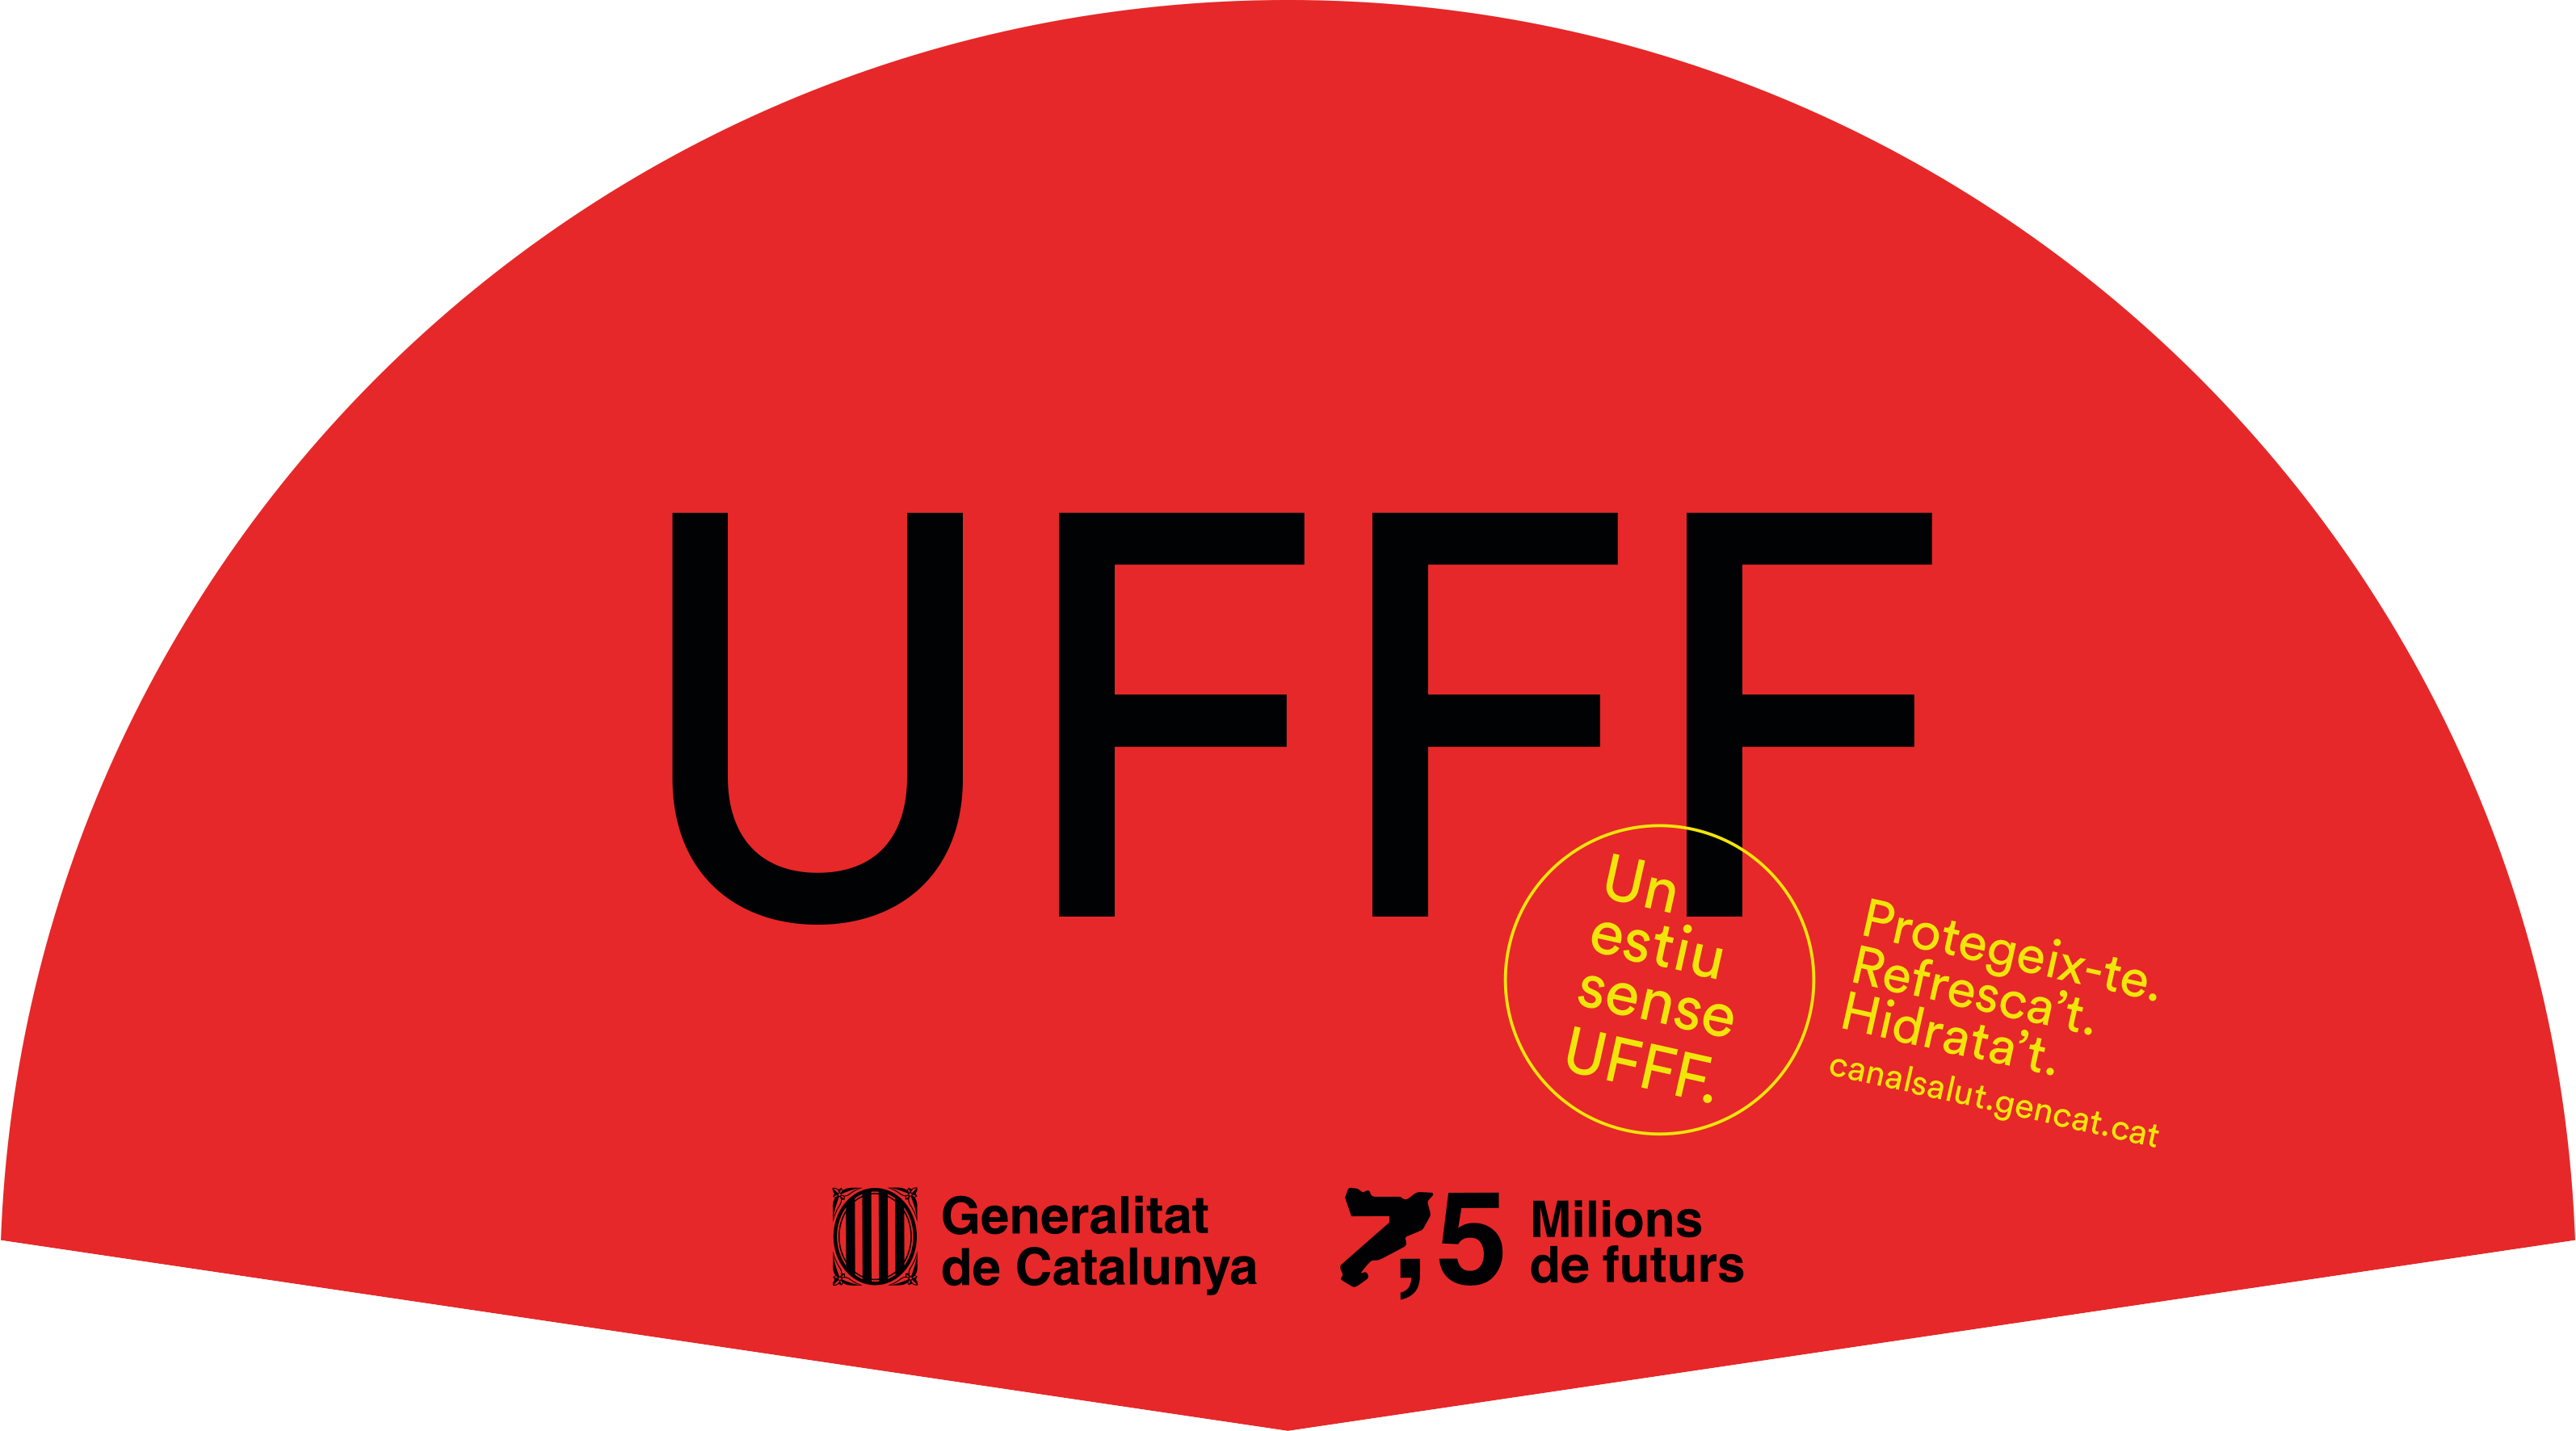 El Departament de Salut ha endegat la campanya 'Un estiu sense UFFF'